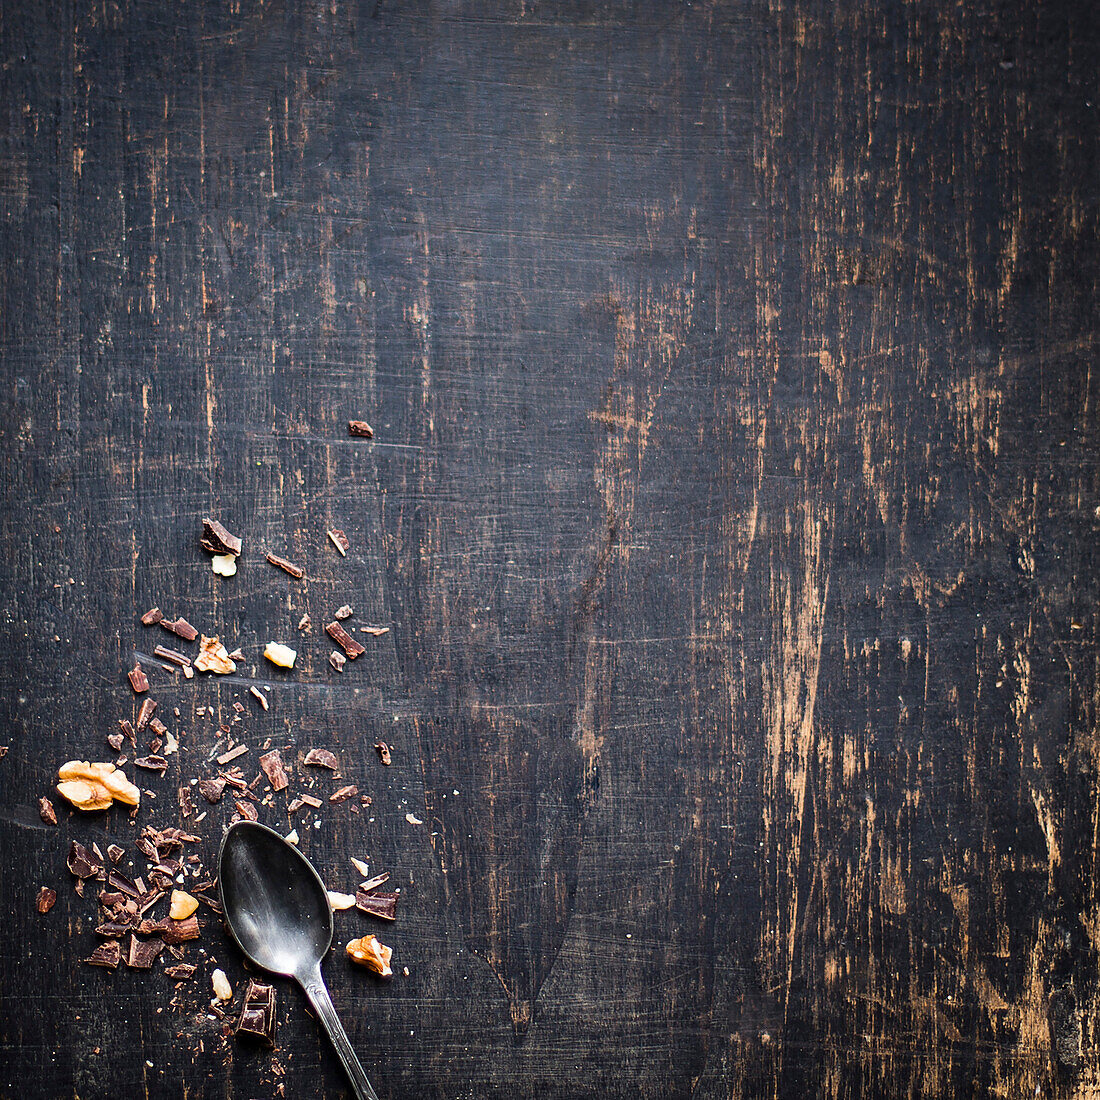 Schokoladenspäne und Walnuss-Stückchen auf dunklem Holzuntergrund